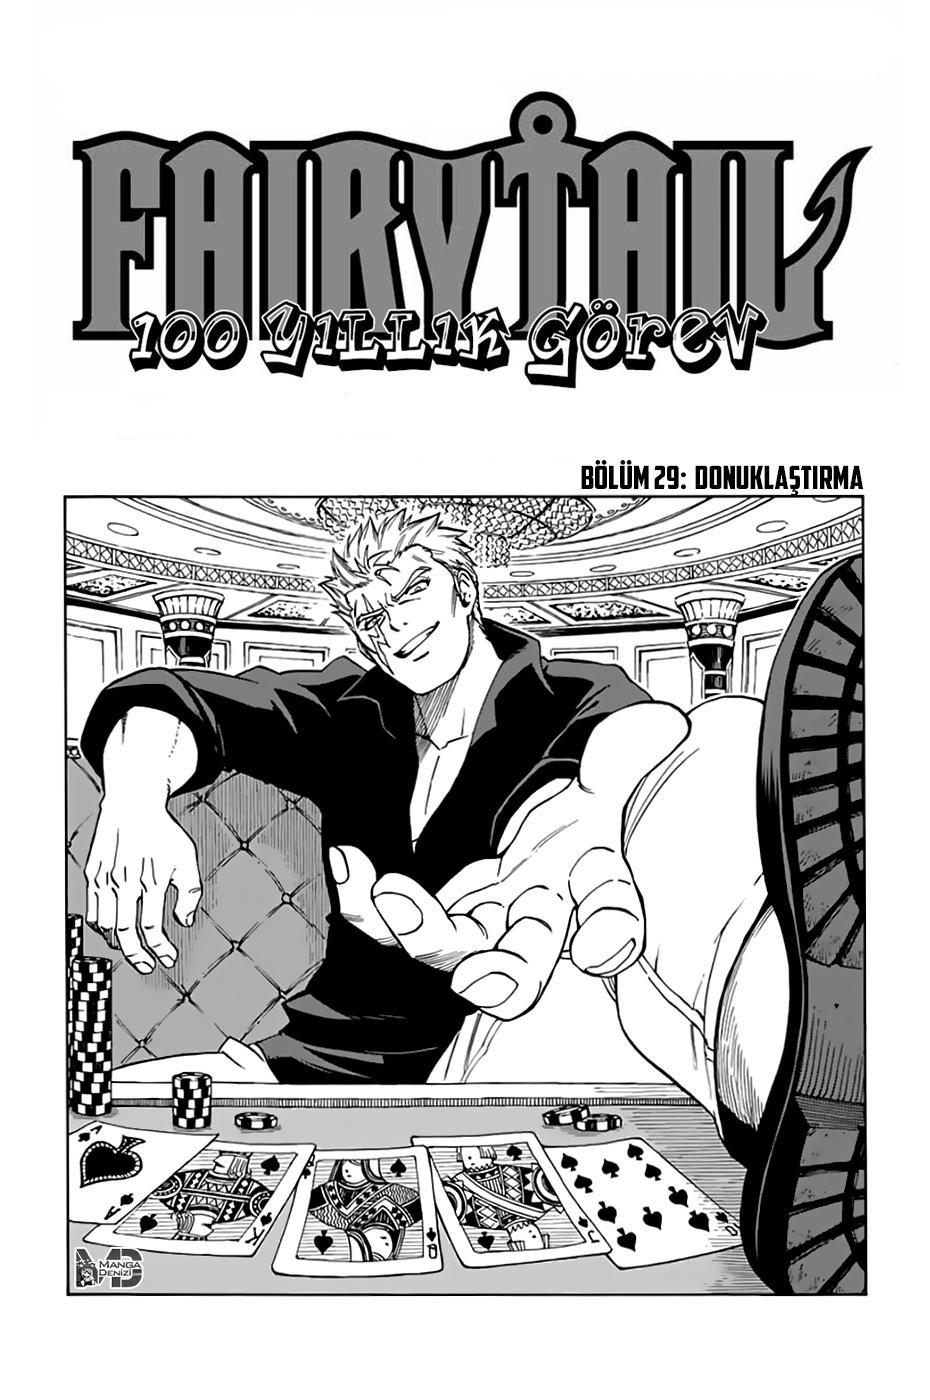 Fairy Tail: 100 Years Quest mangasının 029 bölümünün 2. sayfasını okuyorsunuz.